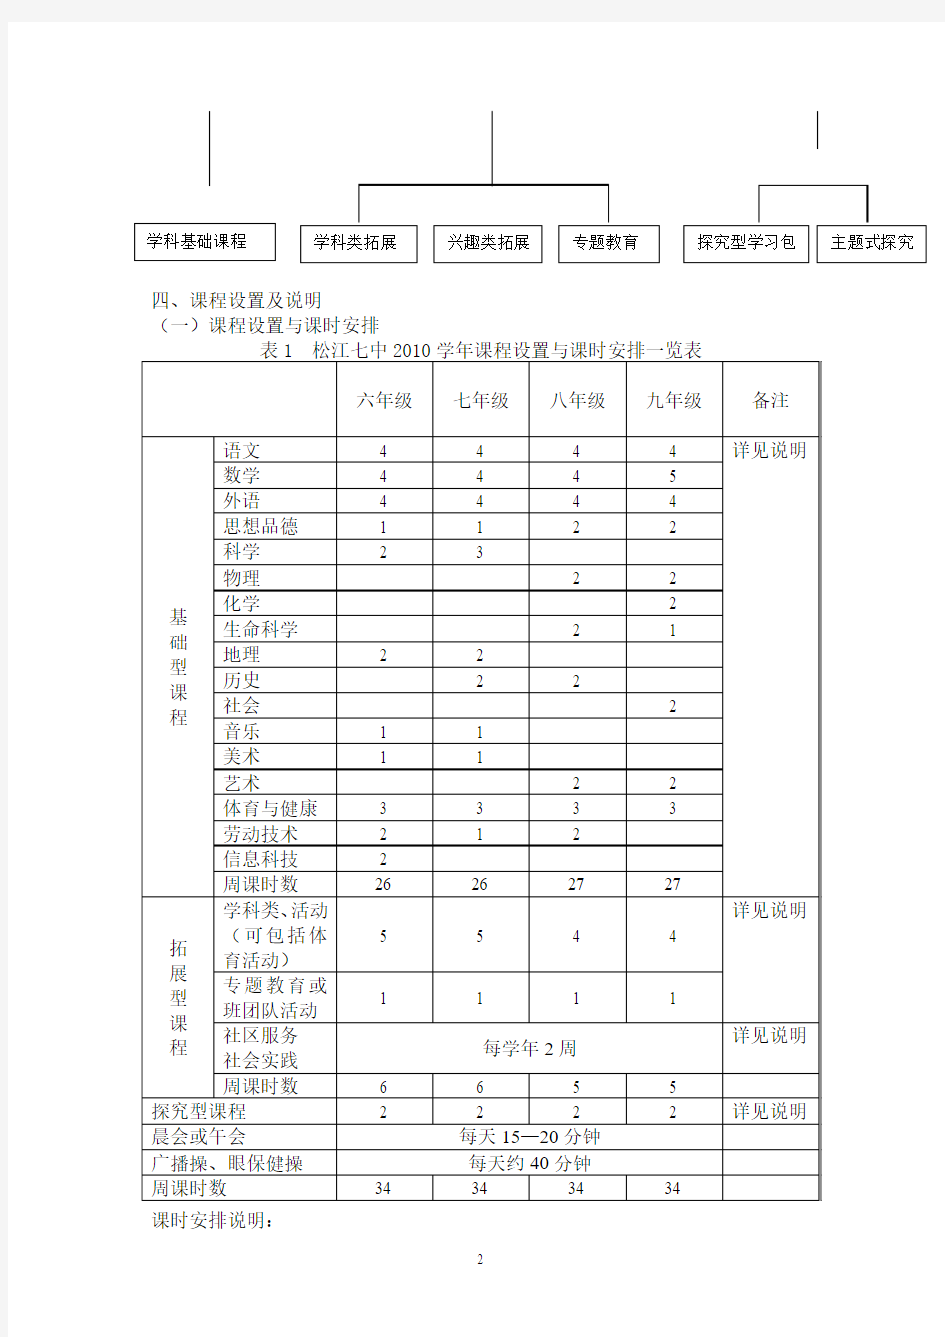 松江七中2010学年度课程实施方案